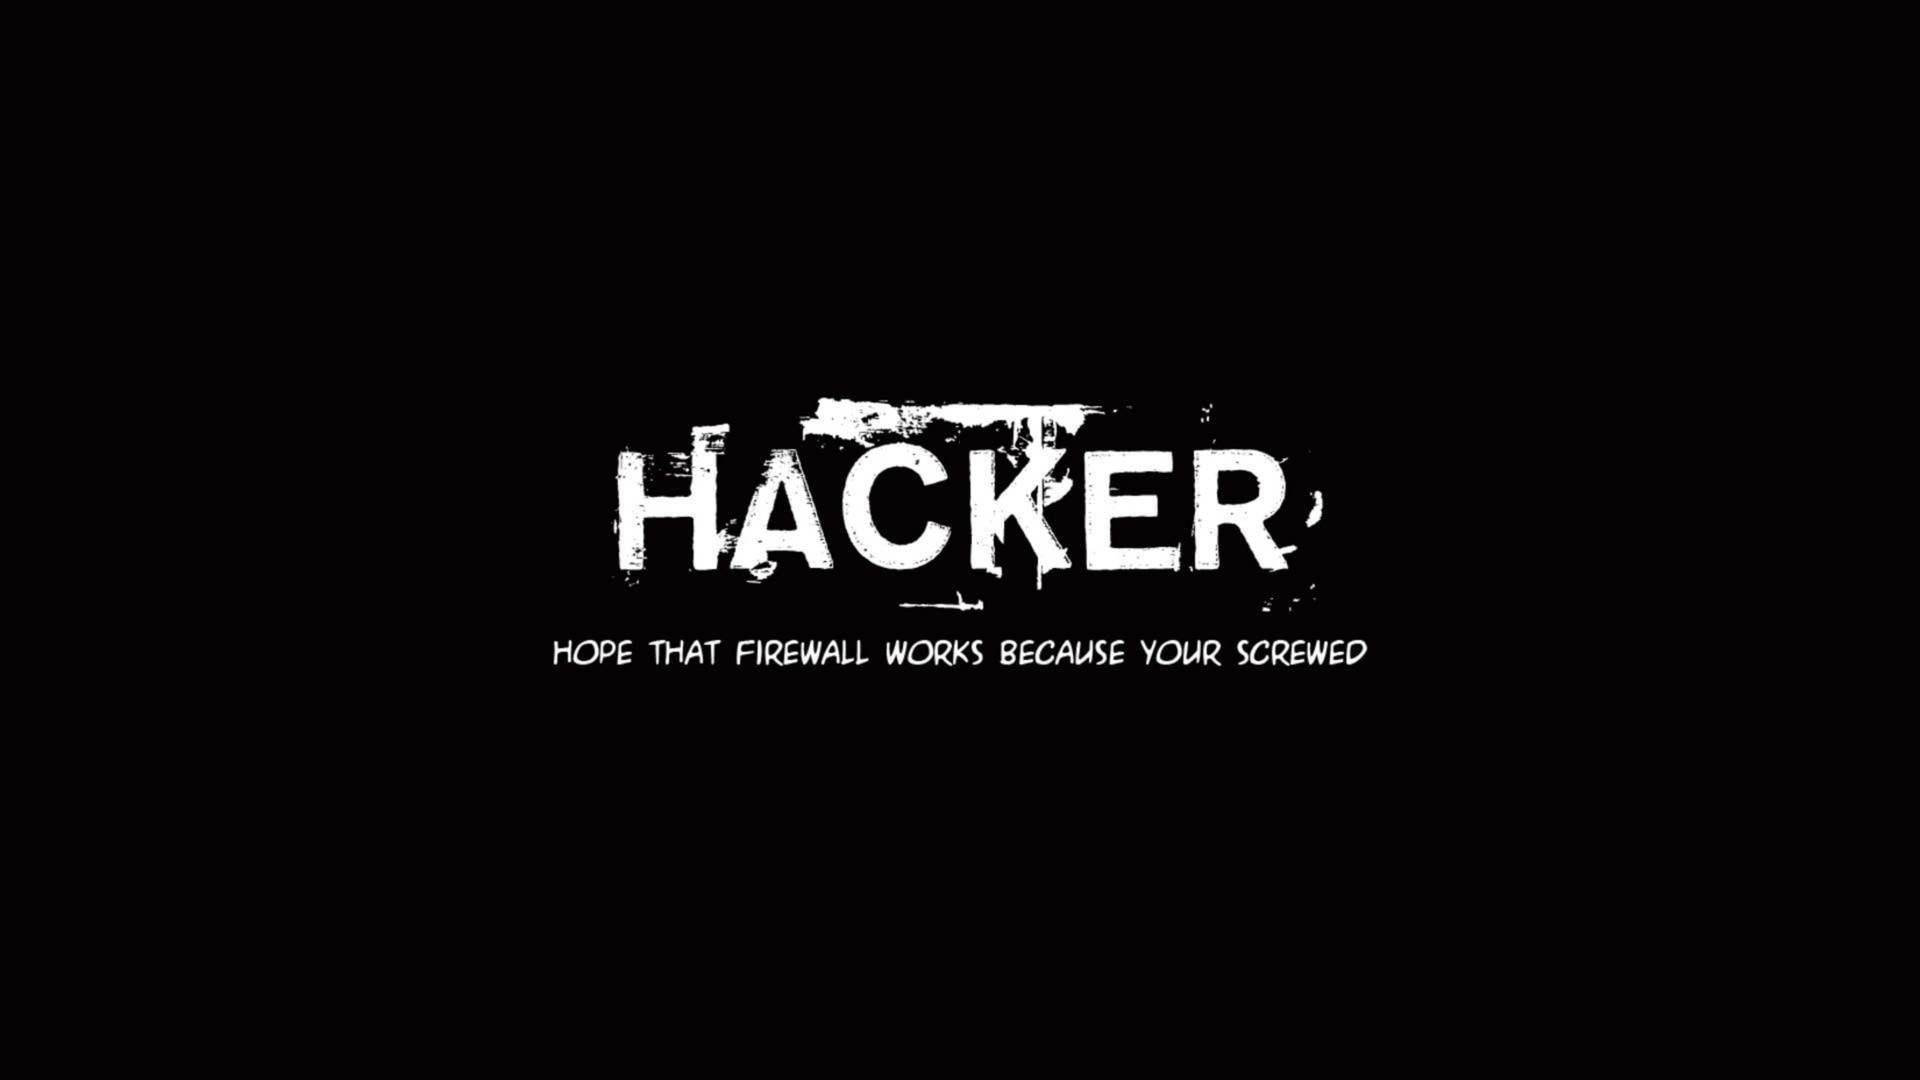 Firewall Hacker 4k Typography